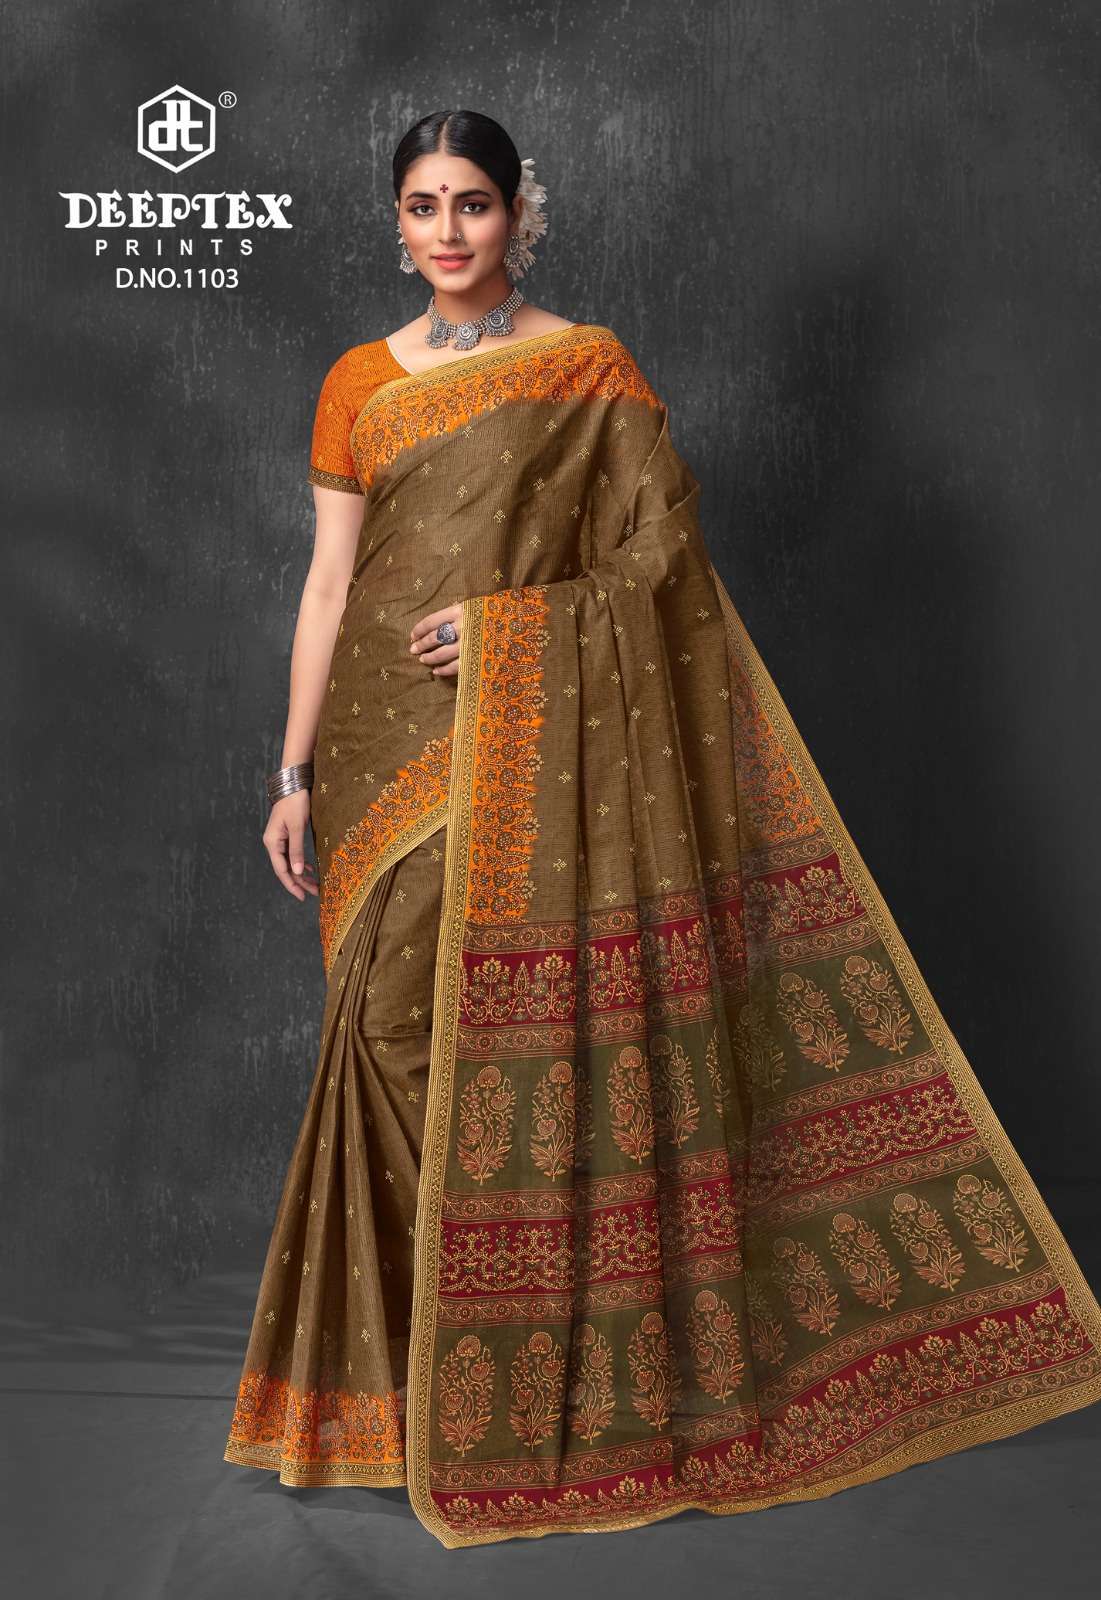 Deeptex Prime Time Vol-11- Printed Cotton Designer sarees in Mumbai